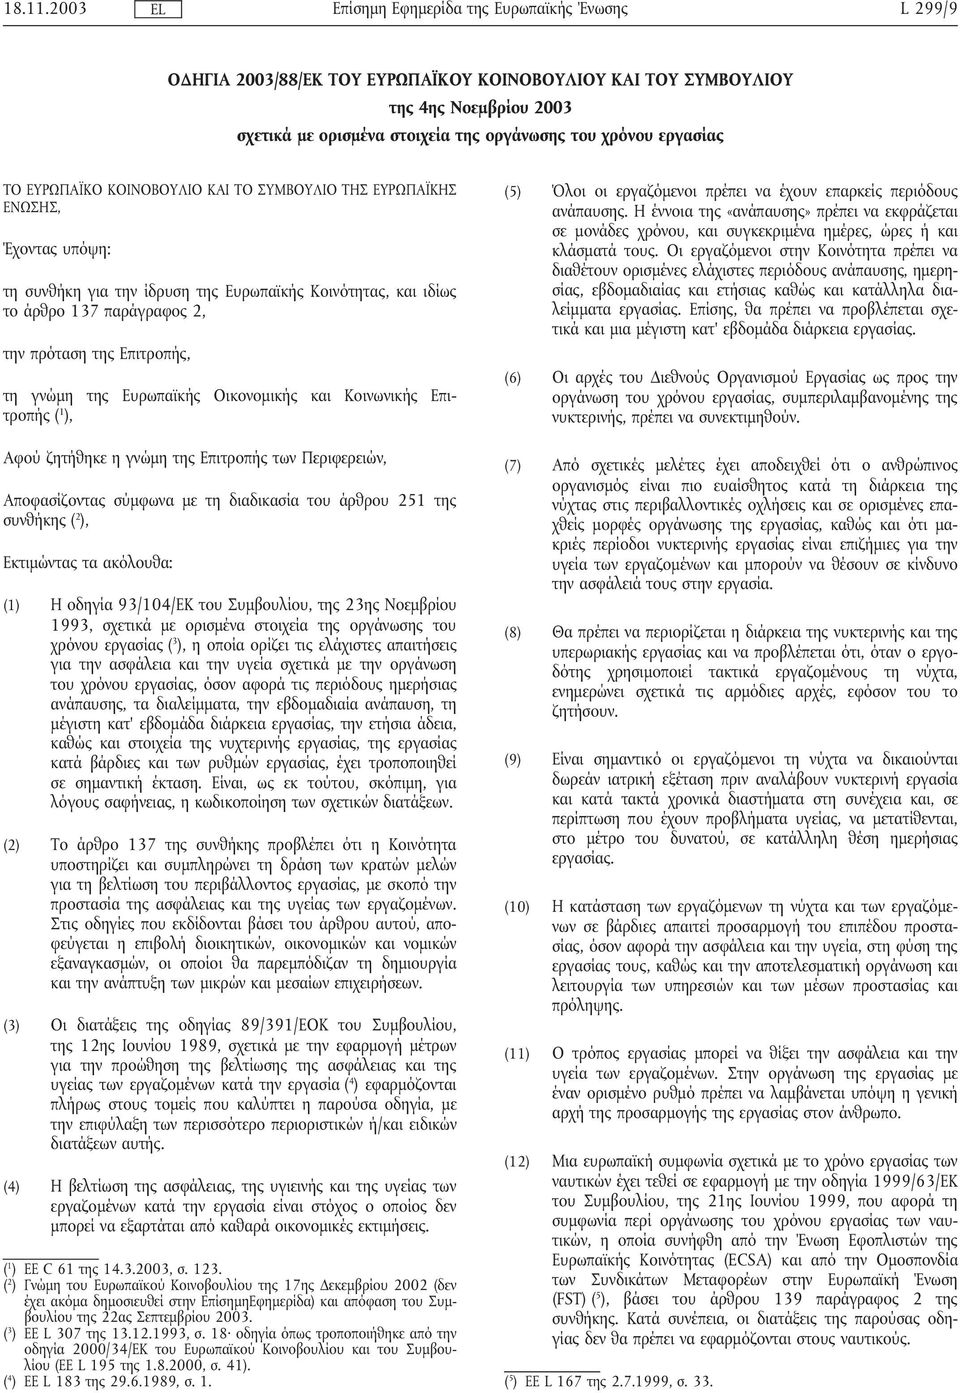 ΣΥΜΒΟΥΛΙΟ ΤΗΣ ΕΥΡΩΠΑΪΚΗΣ ΕΝΩΣΗΣ, Έχοντας υπόψη: τη συνθήκη για την ίδρυση της Ευρωπαϊκής Κοινότητας, και ιδίως το άρθρο 137 παράγραφος 2, την πρόταση της Επιτροπής, τη γνώµη της Ευρωπαϊκής